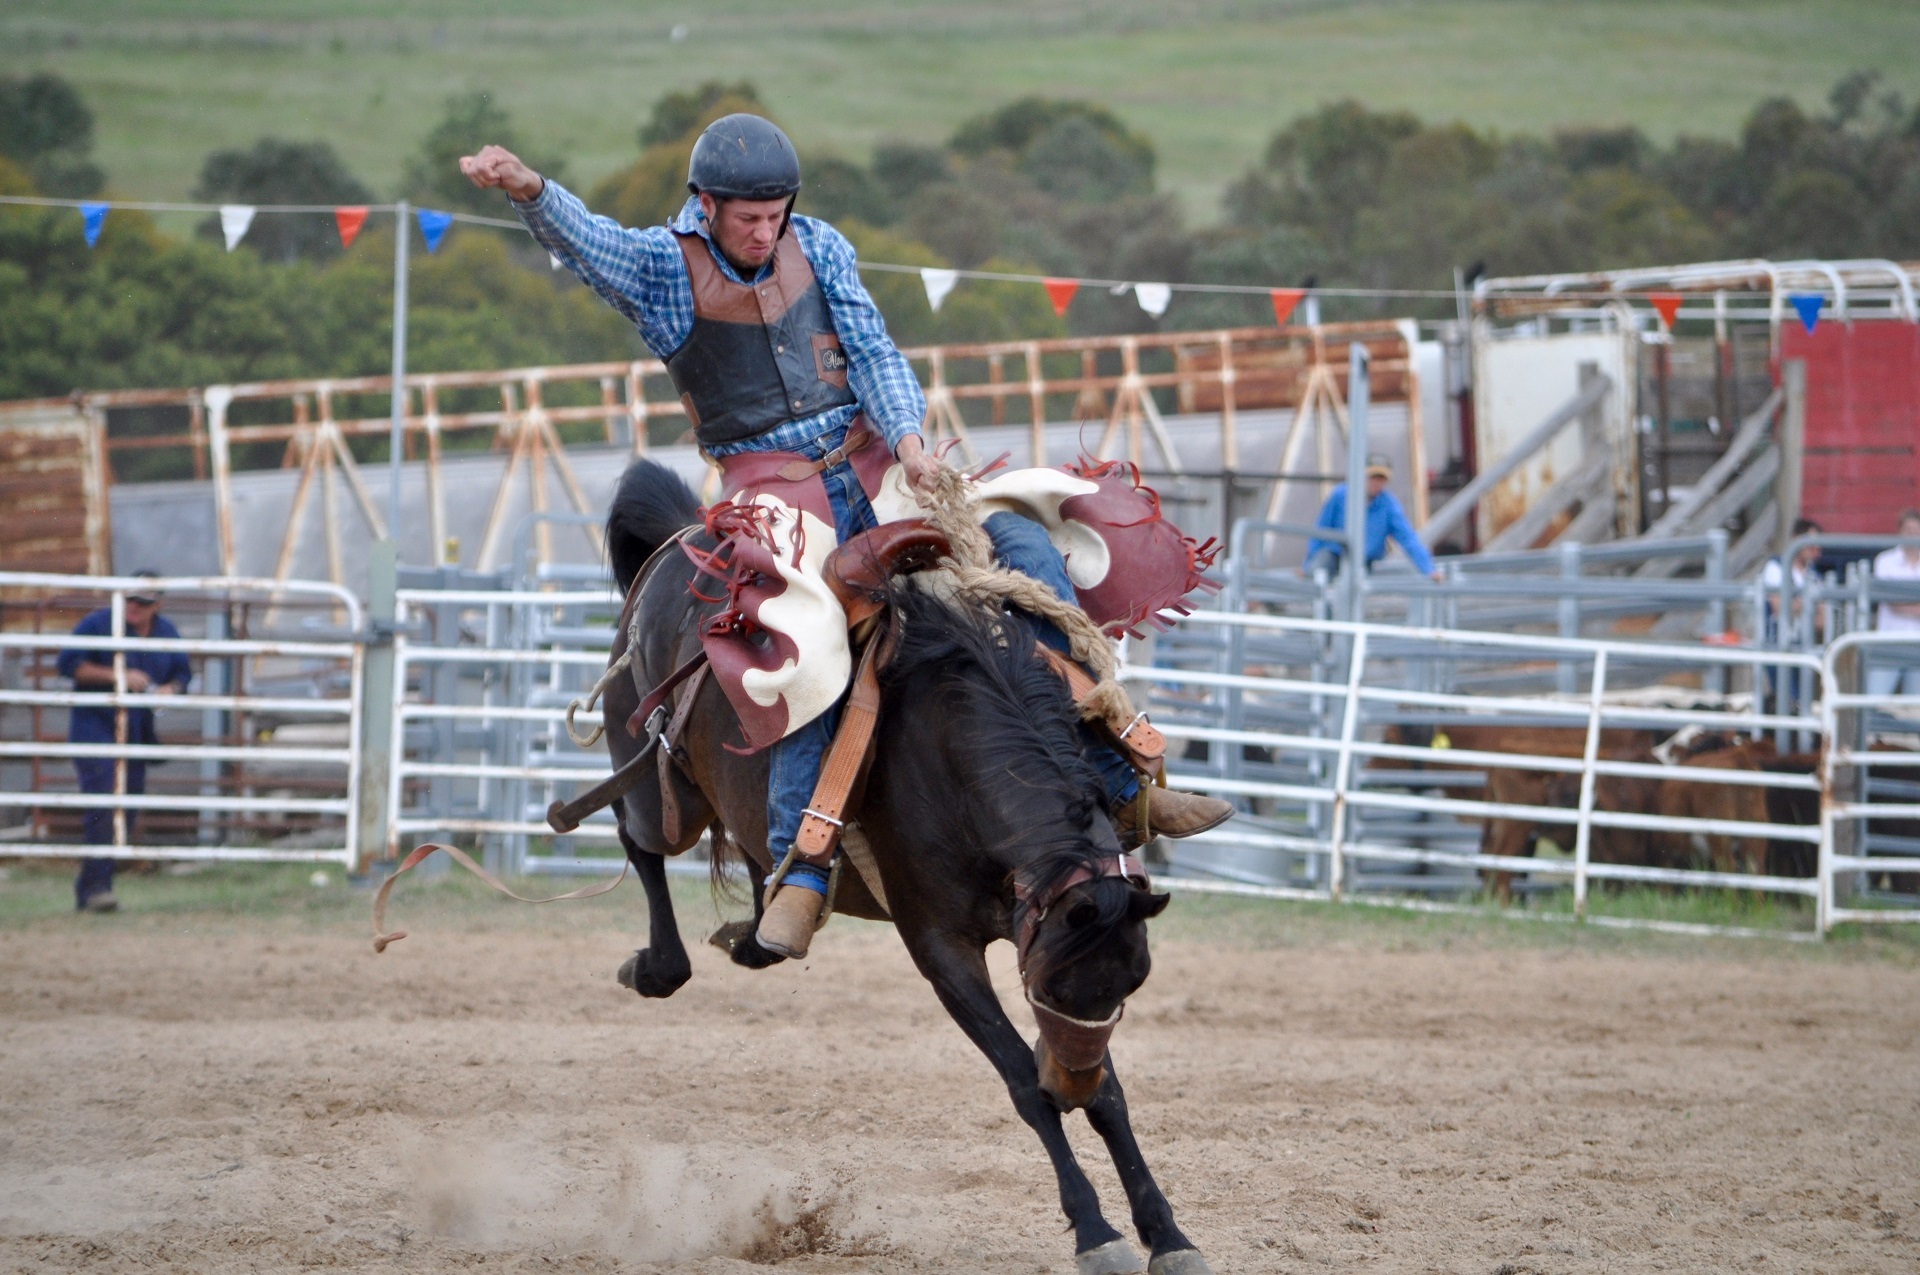 Cowboy riding the horse photo